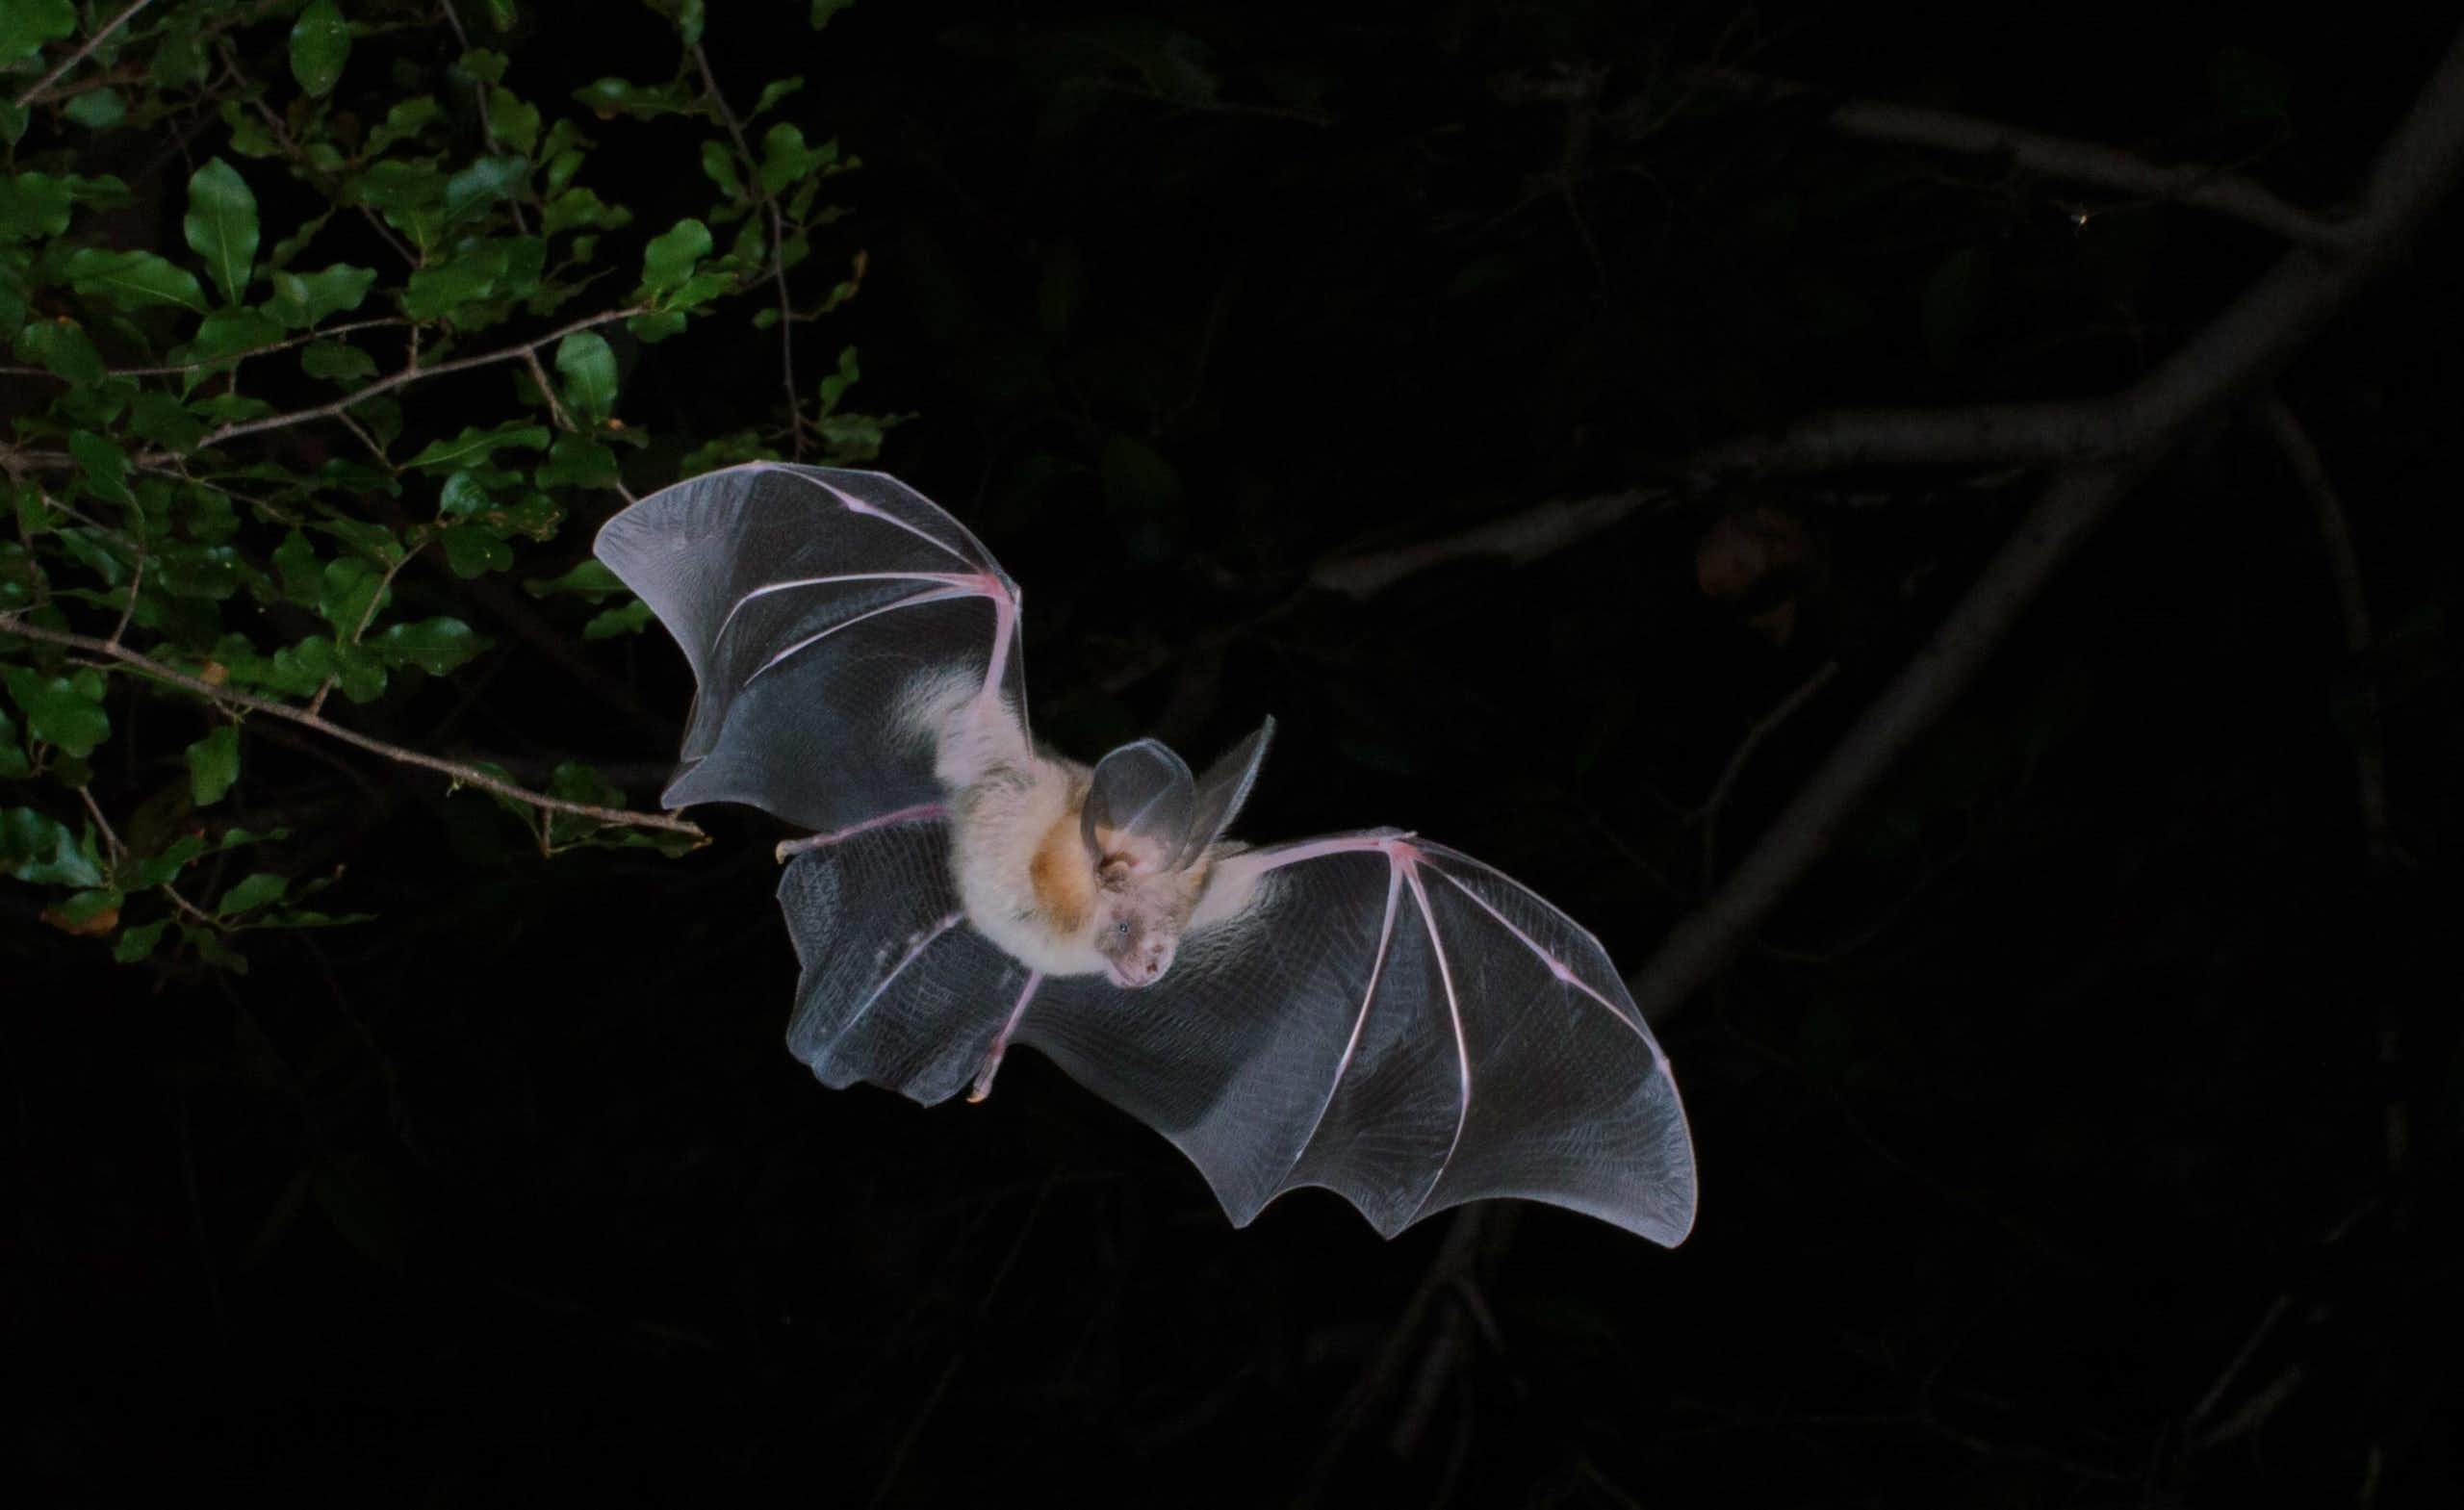 A bat in flight against a dark sky